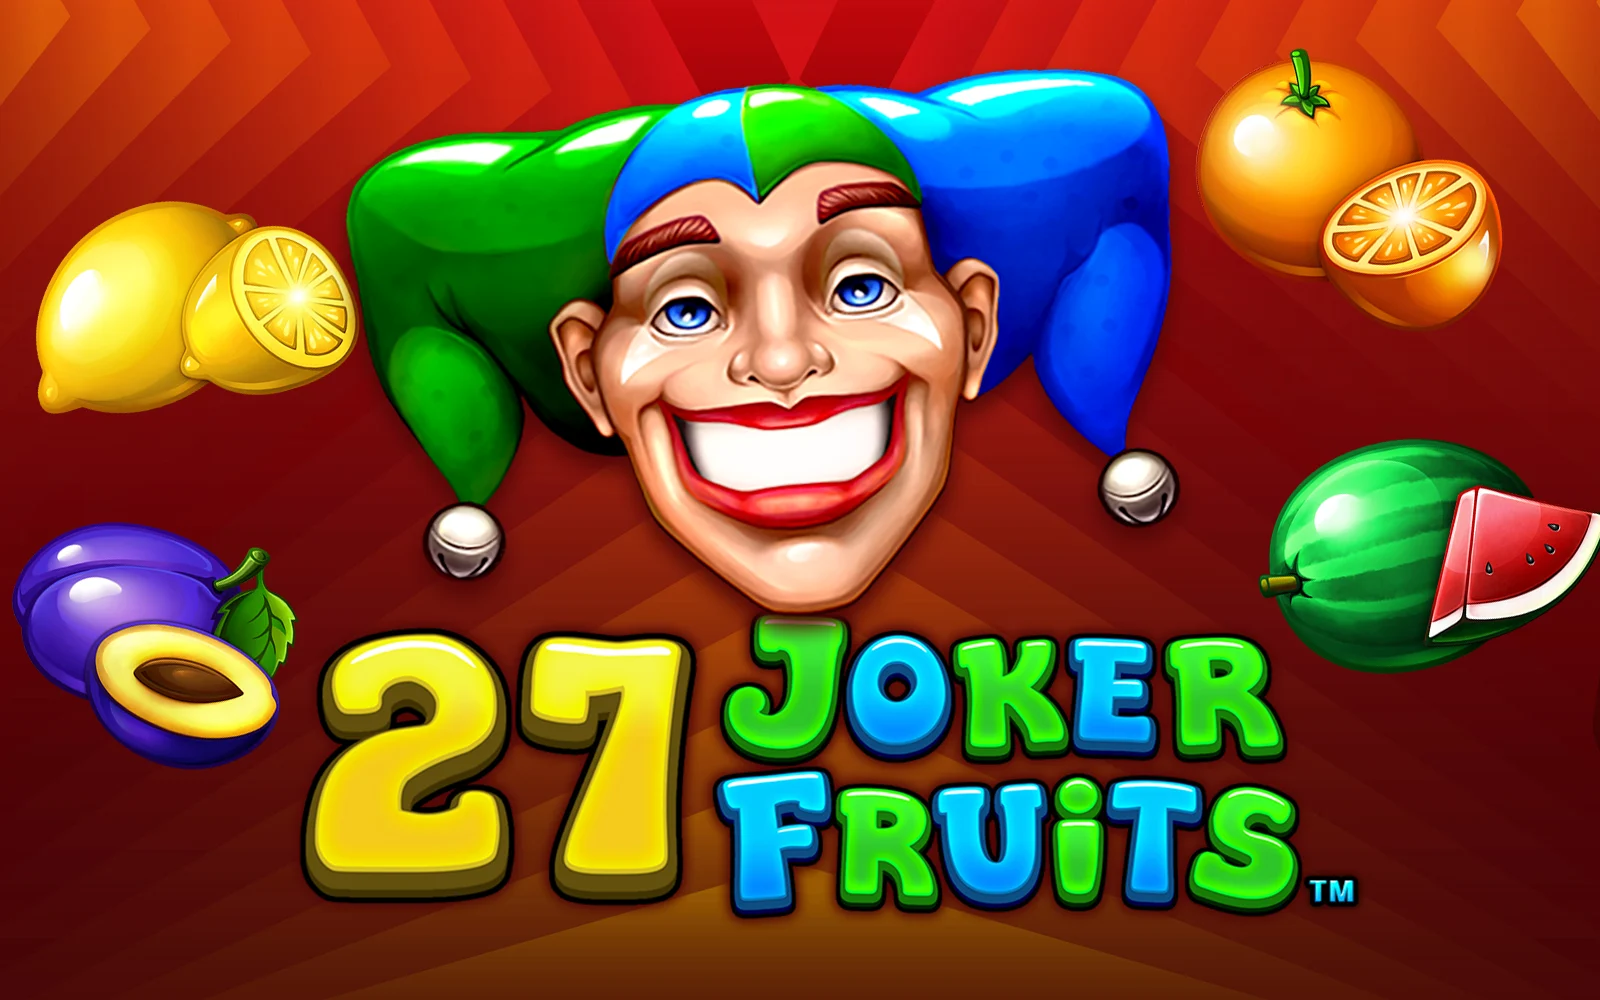 Play 27 Joker Fruits on Starcasino.be online casino